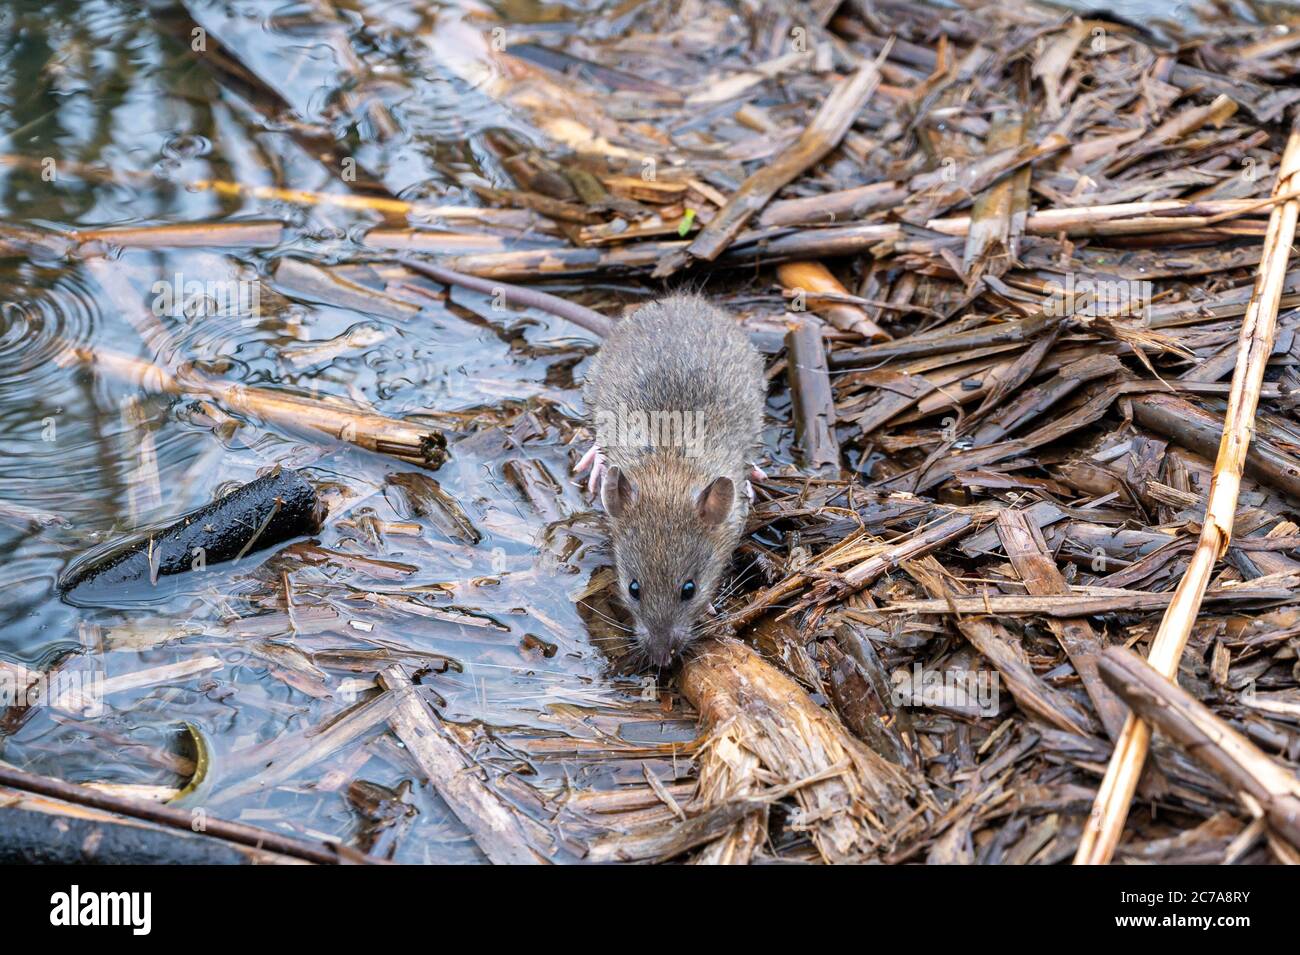 Rat brun, Rattus norvegicus, en quête de nourriture parmi la sous-croissance Banque D'Images